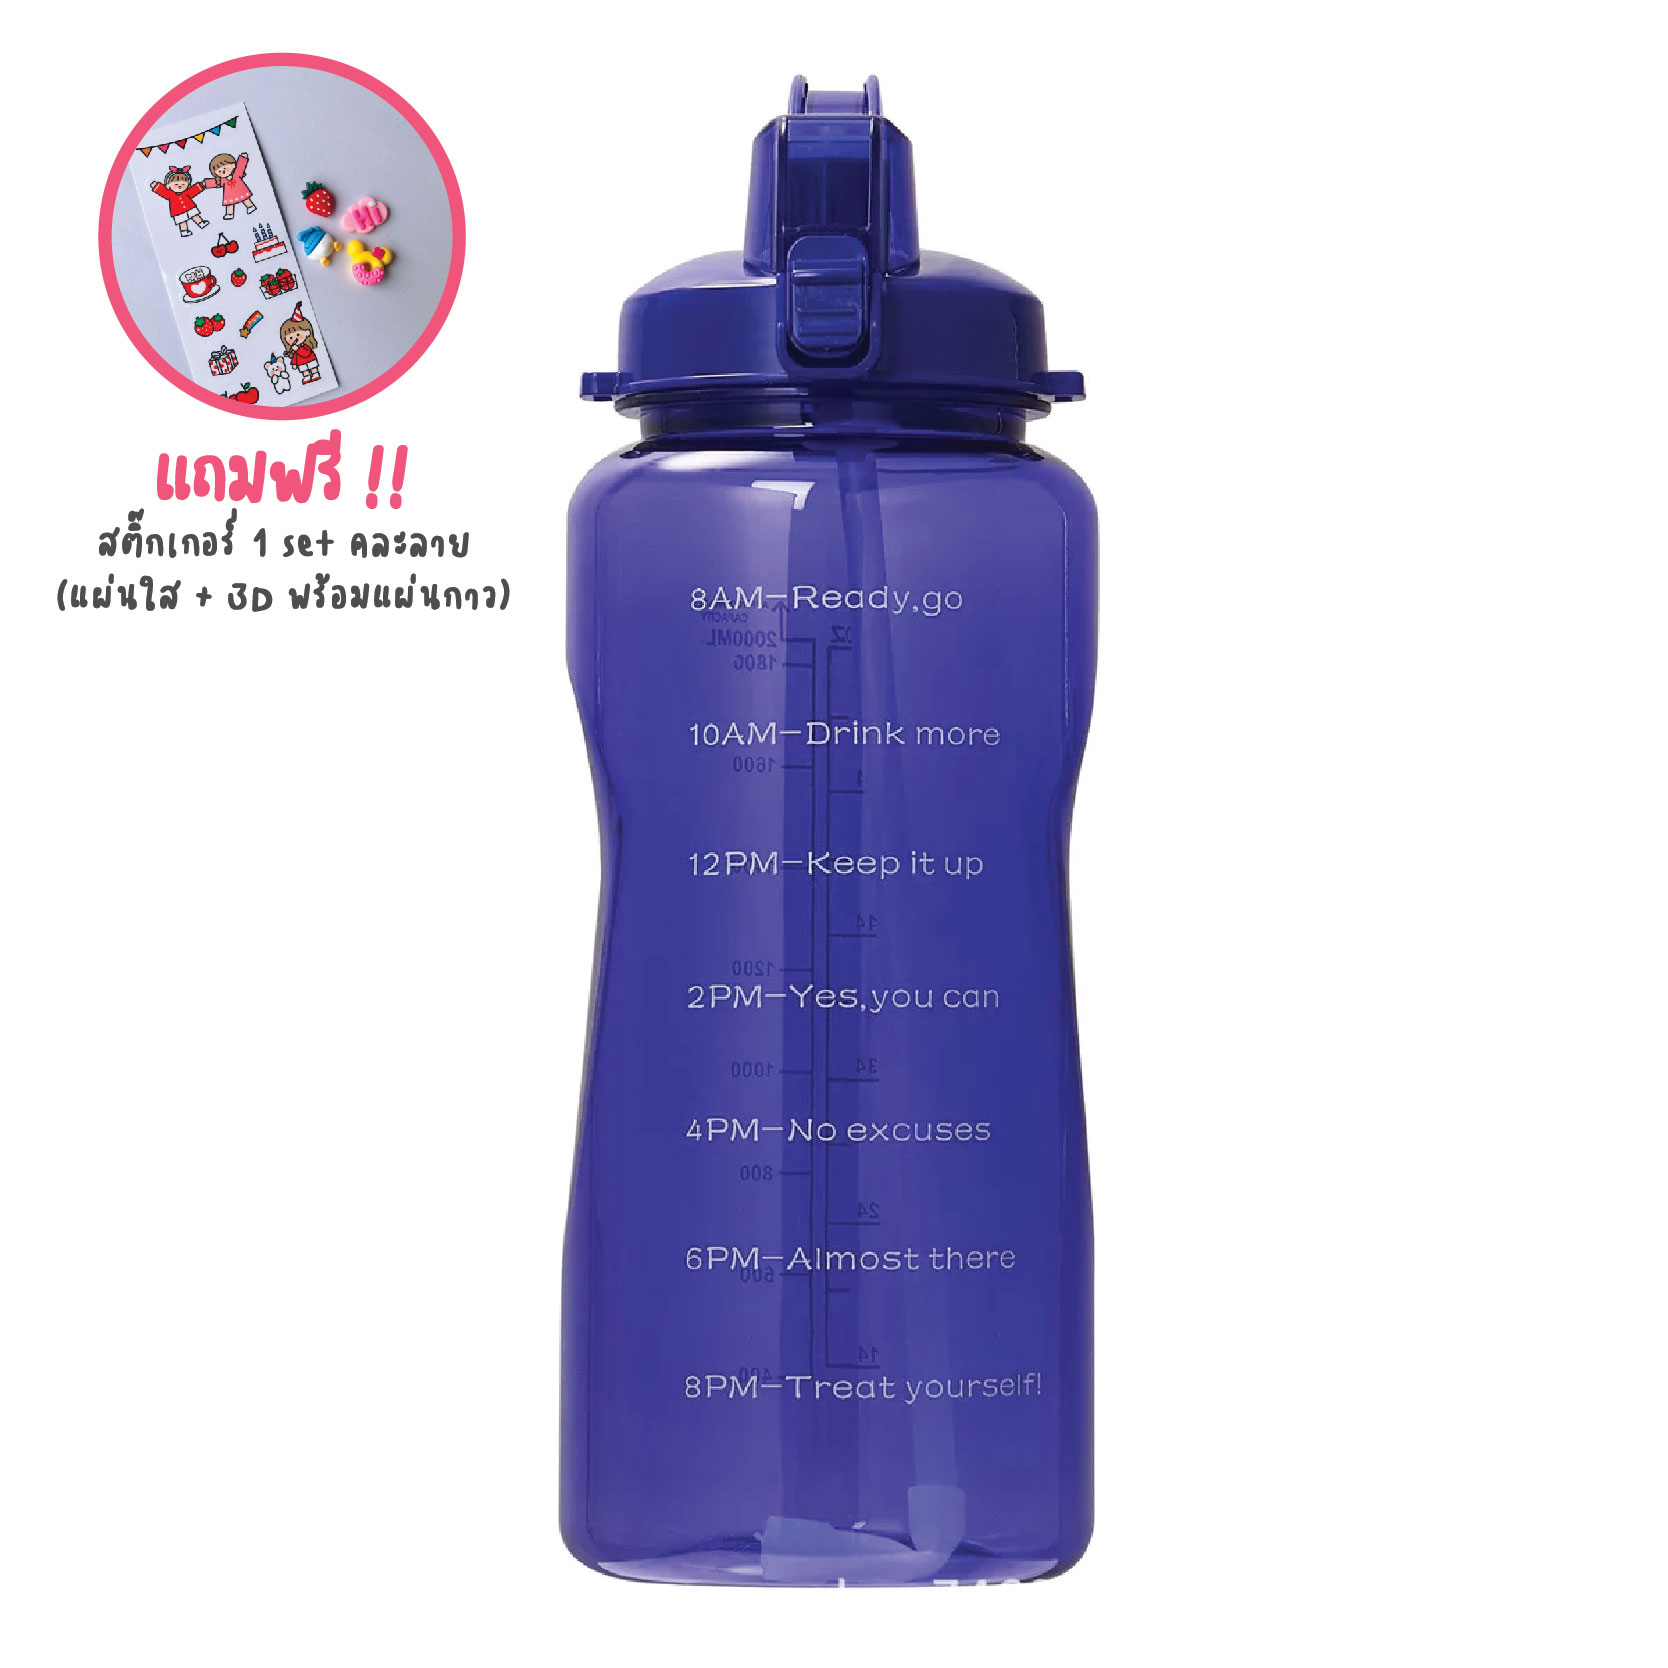 พร้อมส่ง ขวดน้ำพลาสติกแบบพกพา ขวดน้ำสไตล์สปอร์ต ความจุ 1.5/2ลิตร  (BPA FREE) พลาสติกPCป้องกันการตกแตกวัสดุปลอดภัยไม่เป็นอันตราย